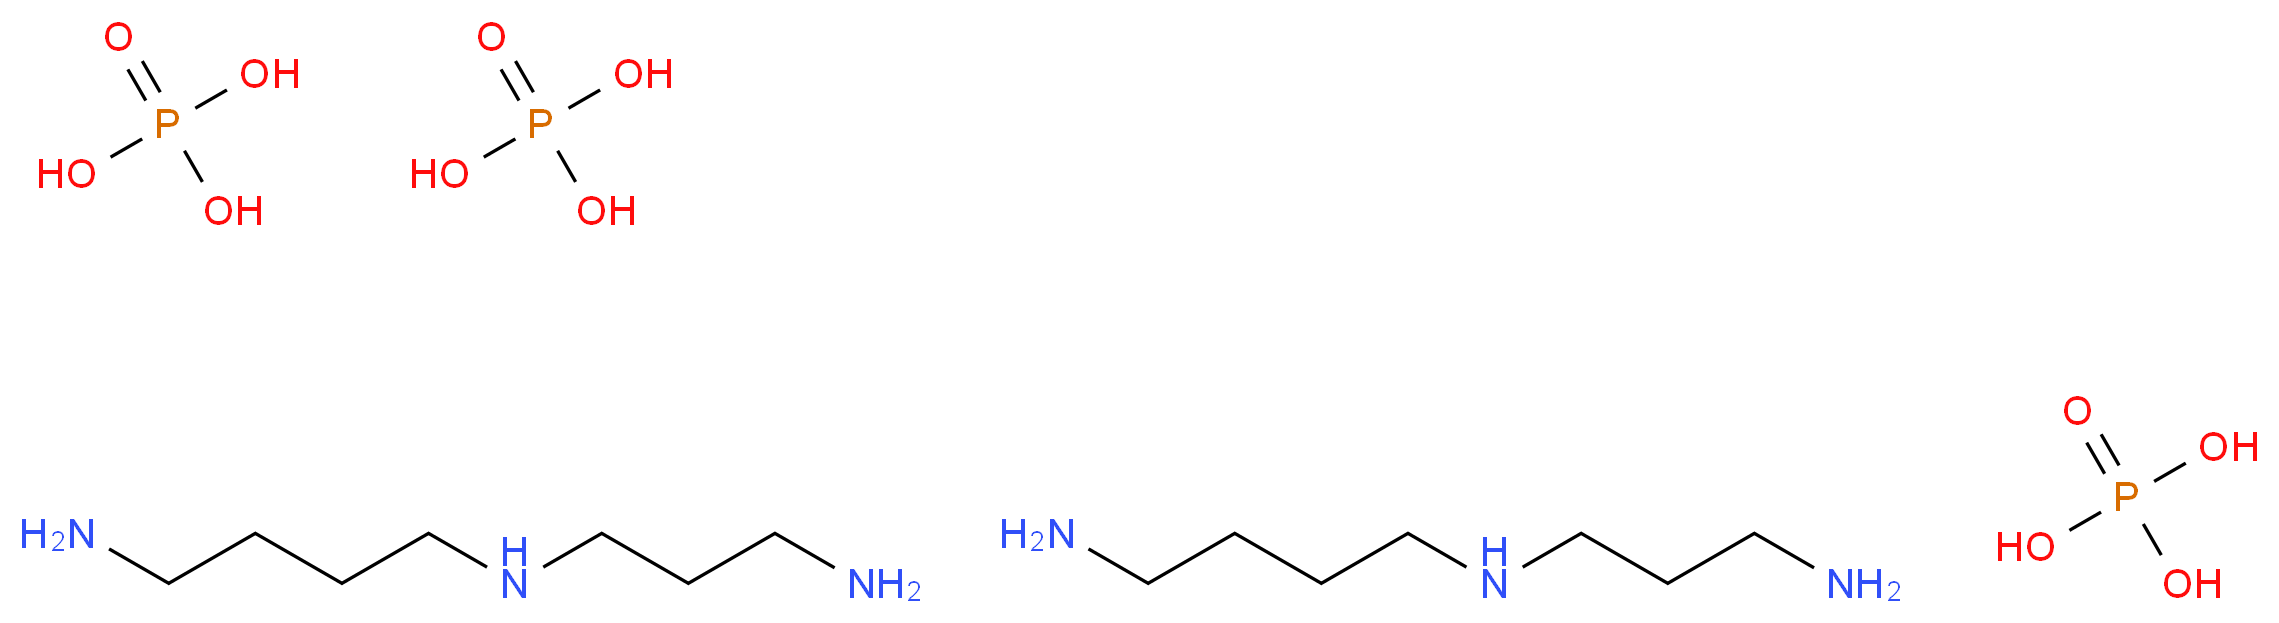 23273-82-7 molecular structure